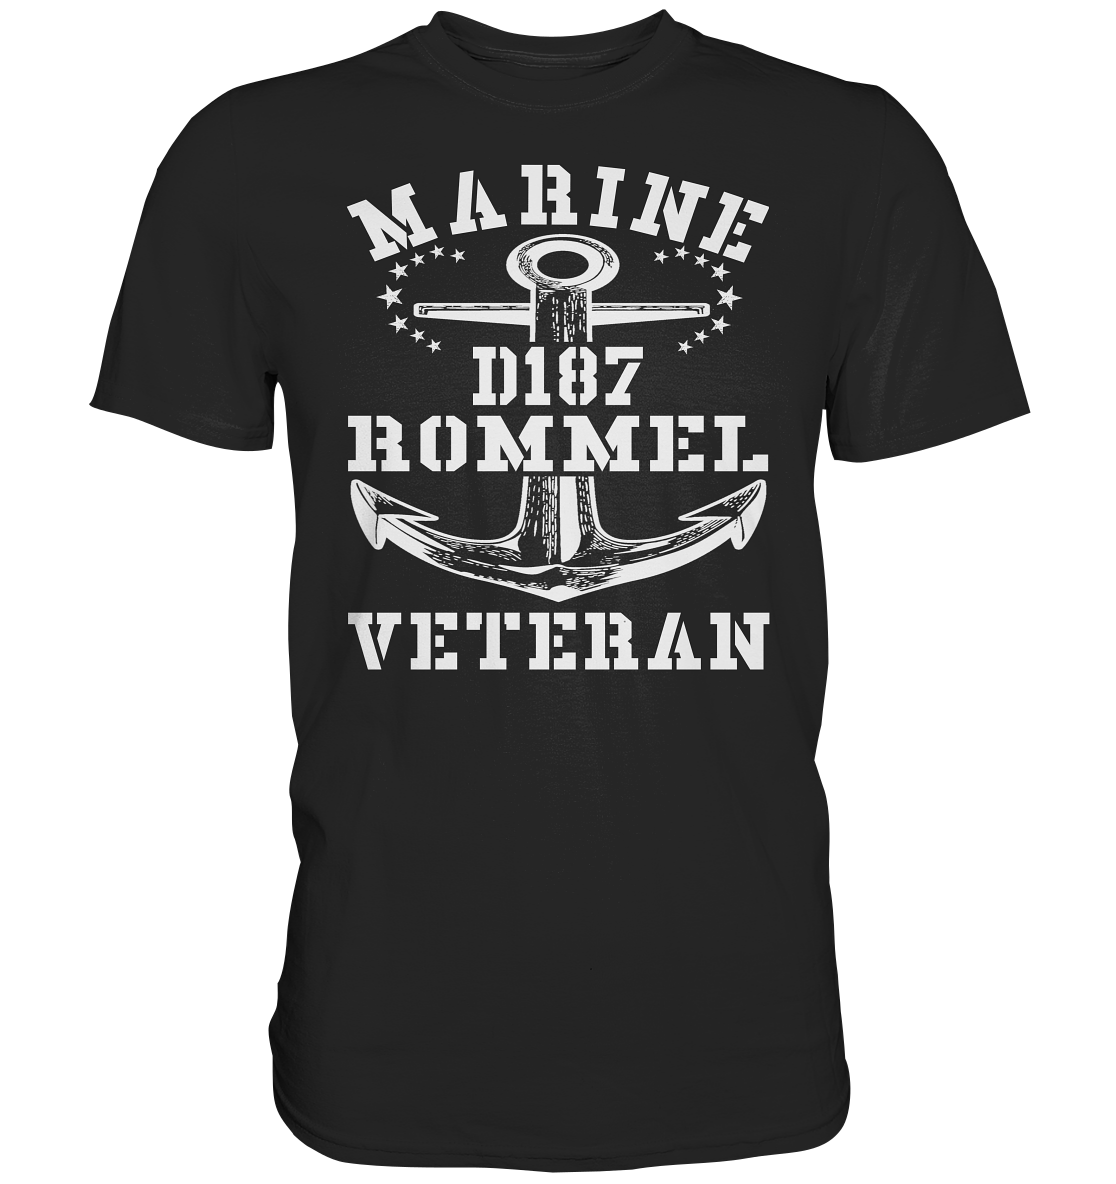 Zerstörer D187 ROMMEL Marine Veteran - Premium Shirt